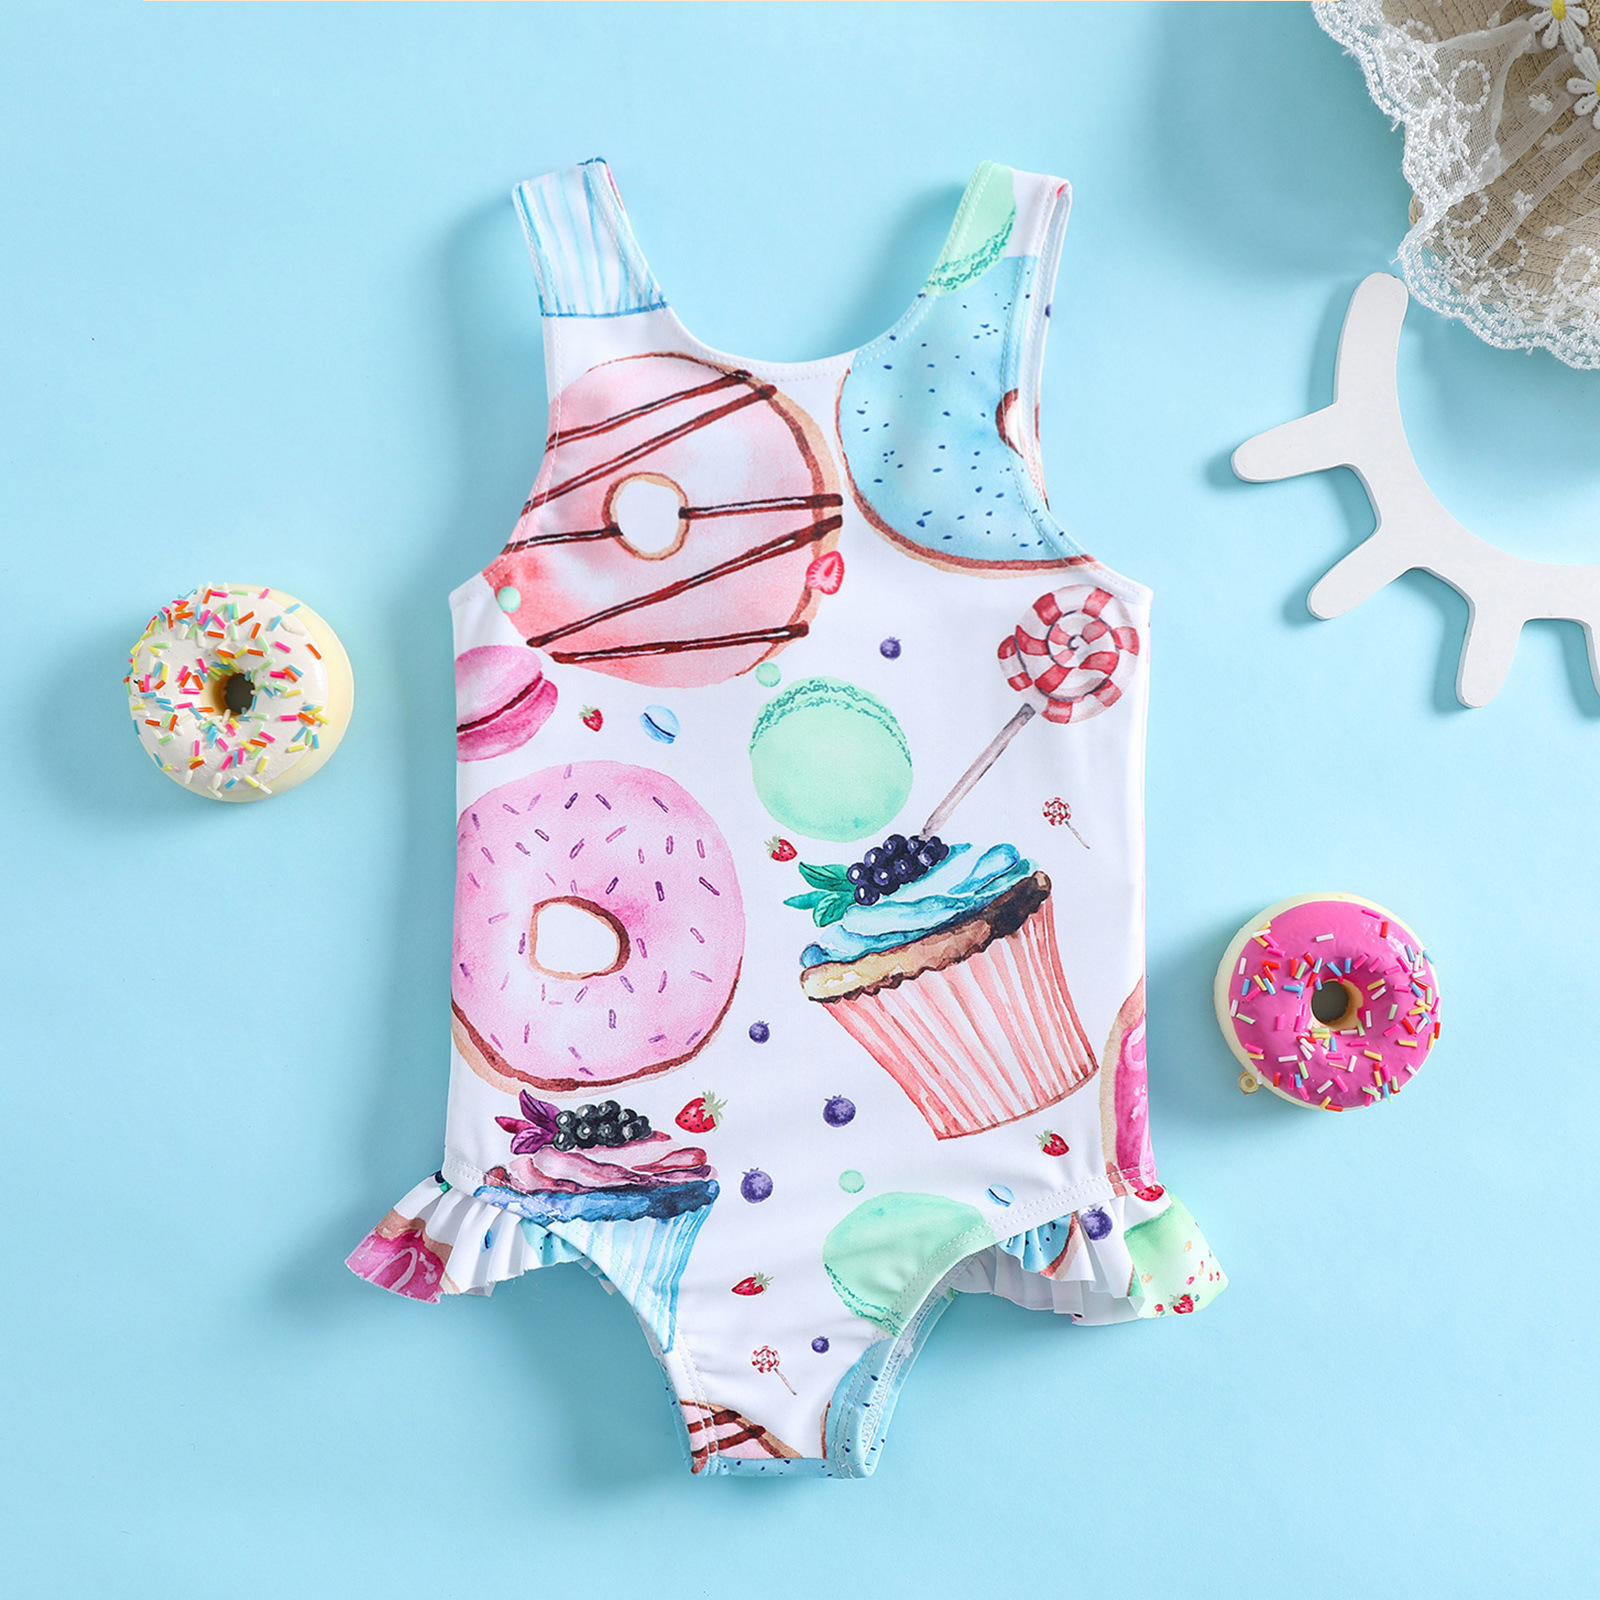 夏季婴儿泳装 创意甜甜圈棒棒糖印花 女童女宝宝温泉沙滩游泳衣